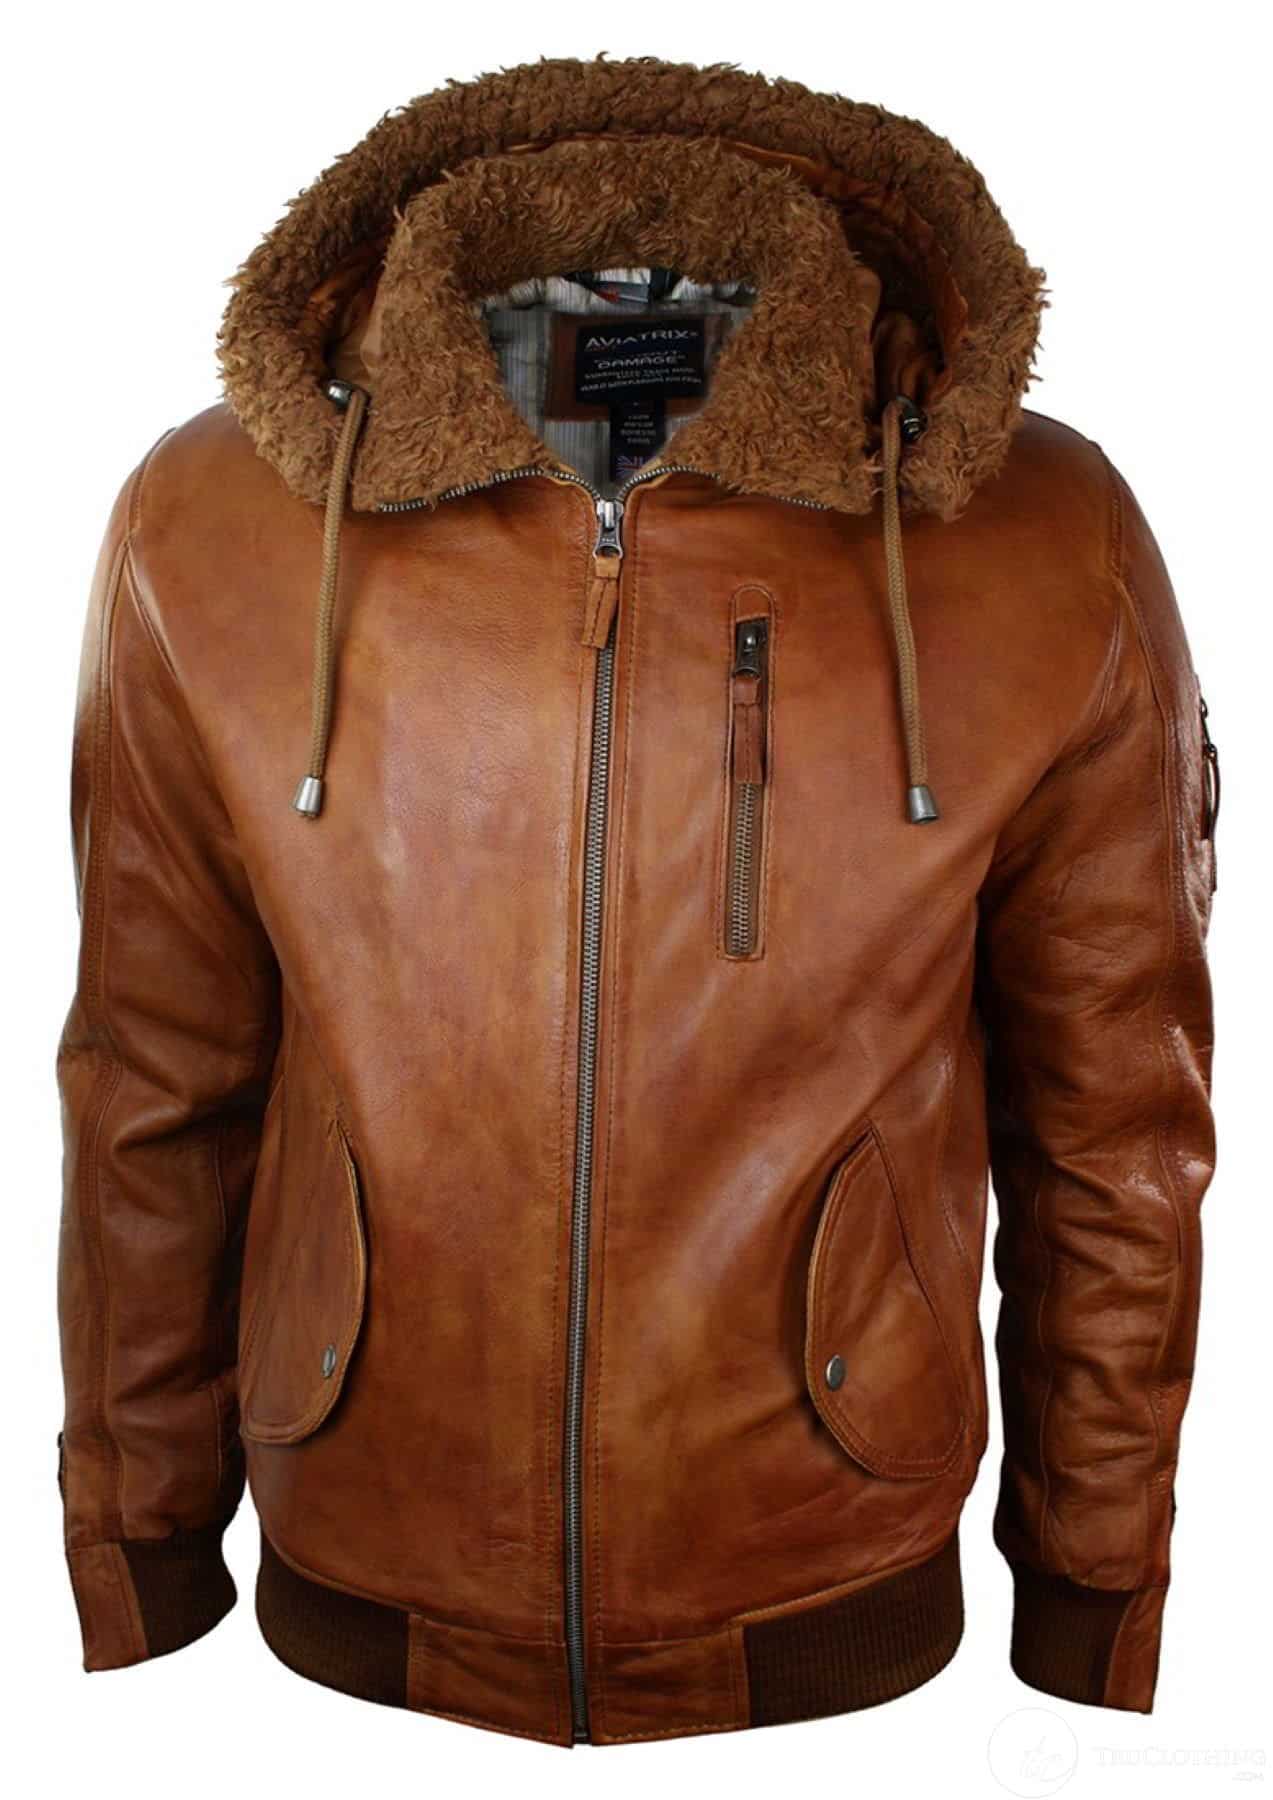 Vintage Men's Brown Leather Coat With Faux Fur Collar Trim - M – Rokit